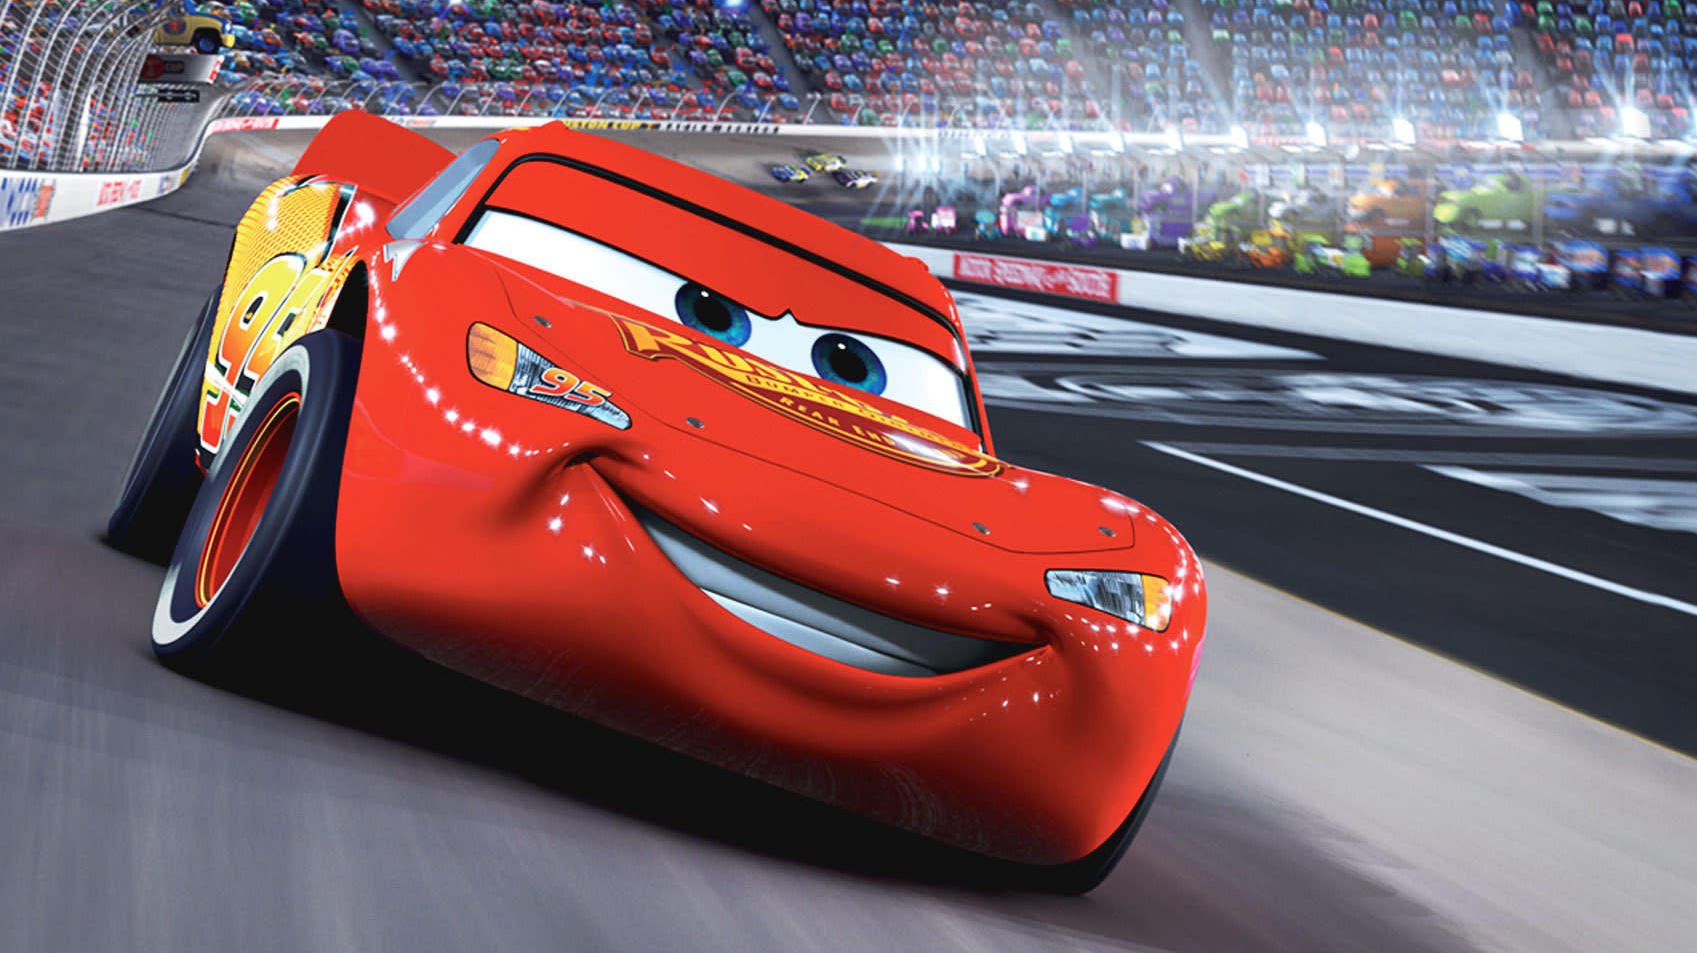 Lightning McQueen in Cars (Image: Pixar)